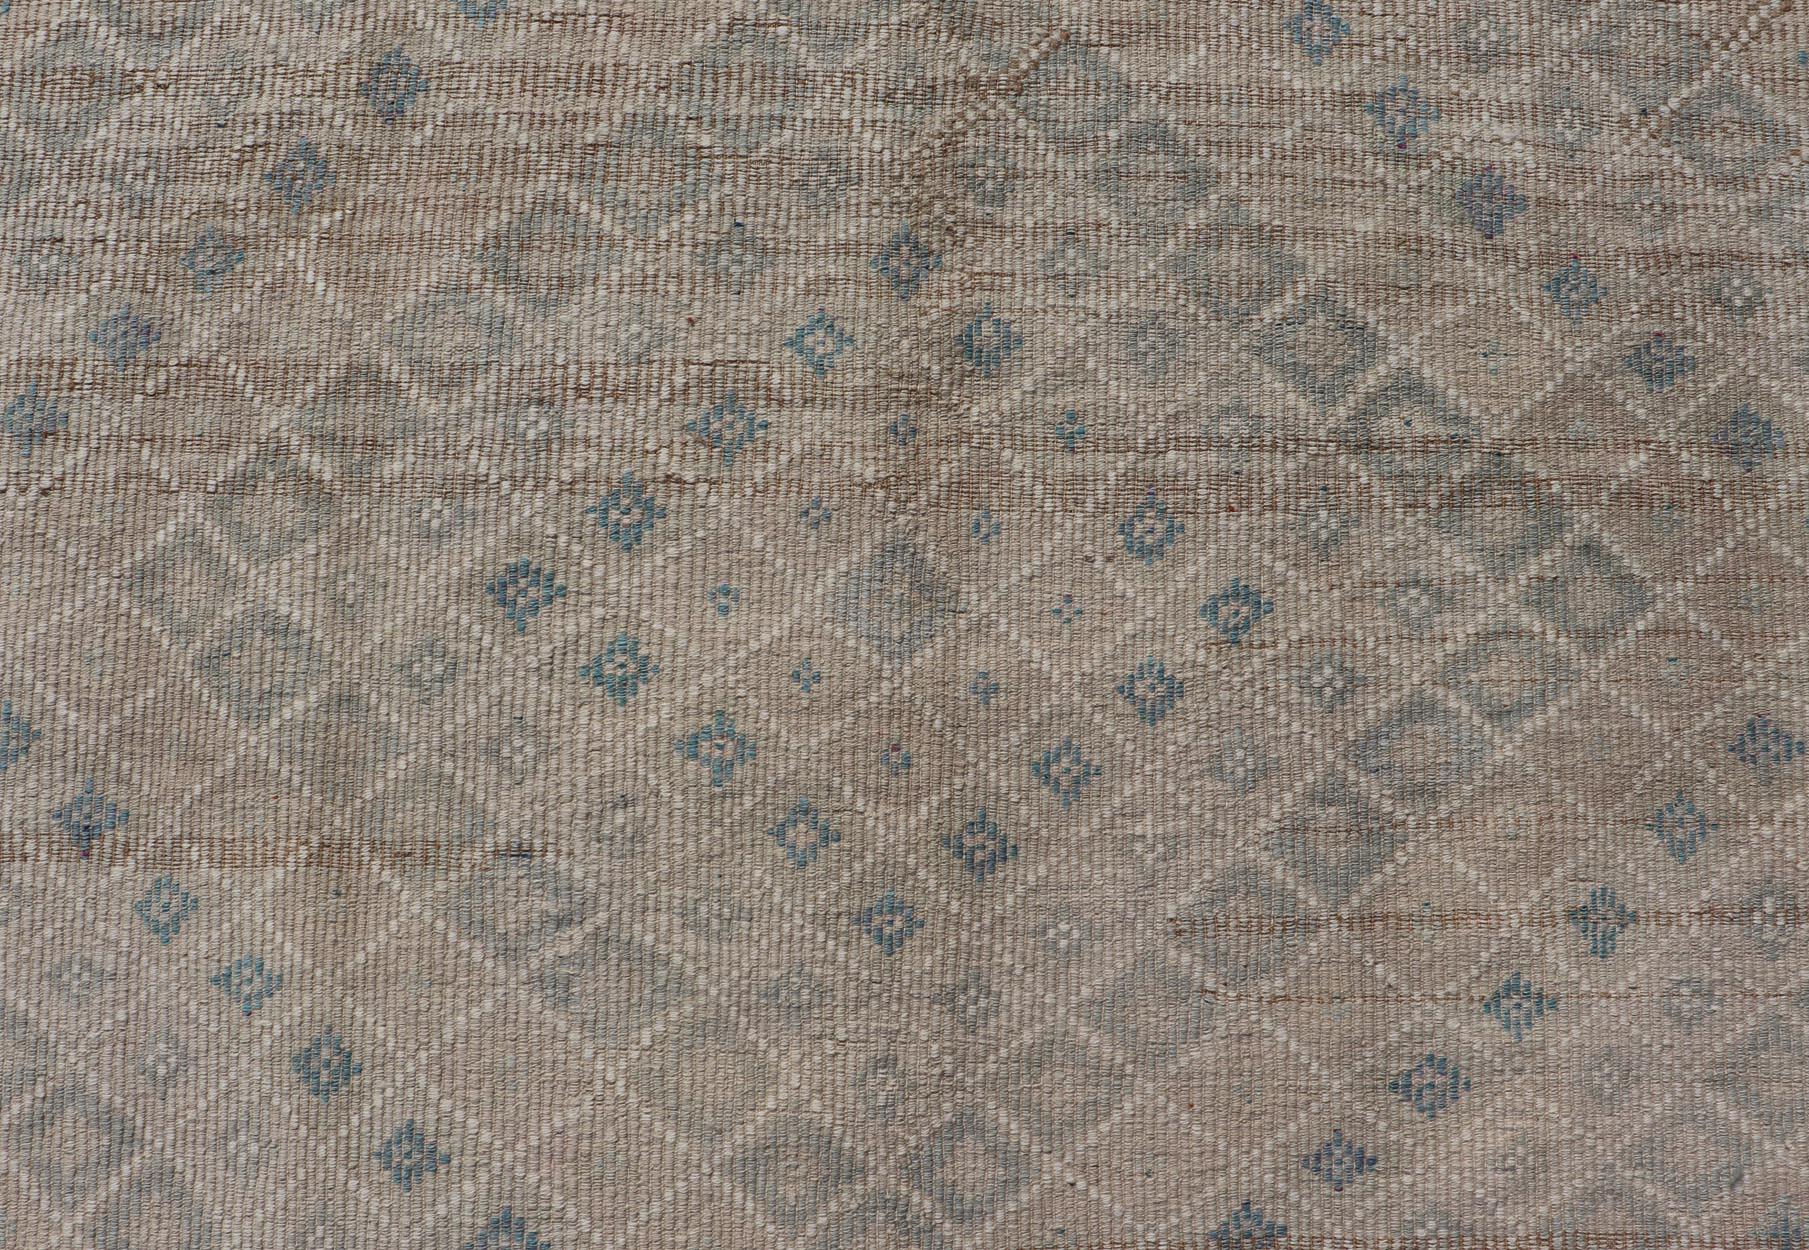 Wool Vintage Turkish Embroidered Flat-Weave Rug Diamond Shape Geometric Design